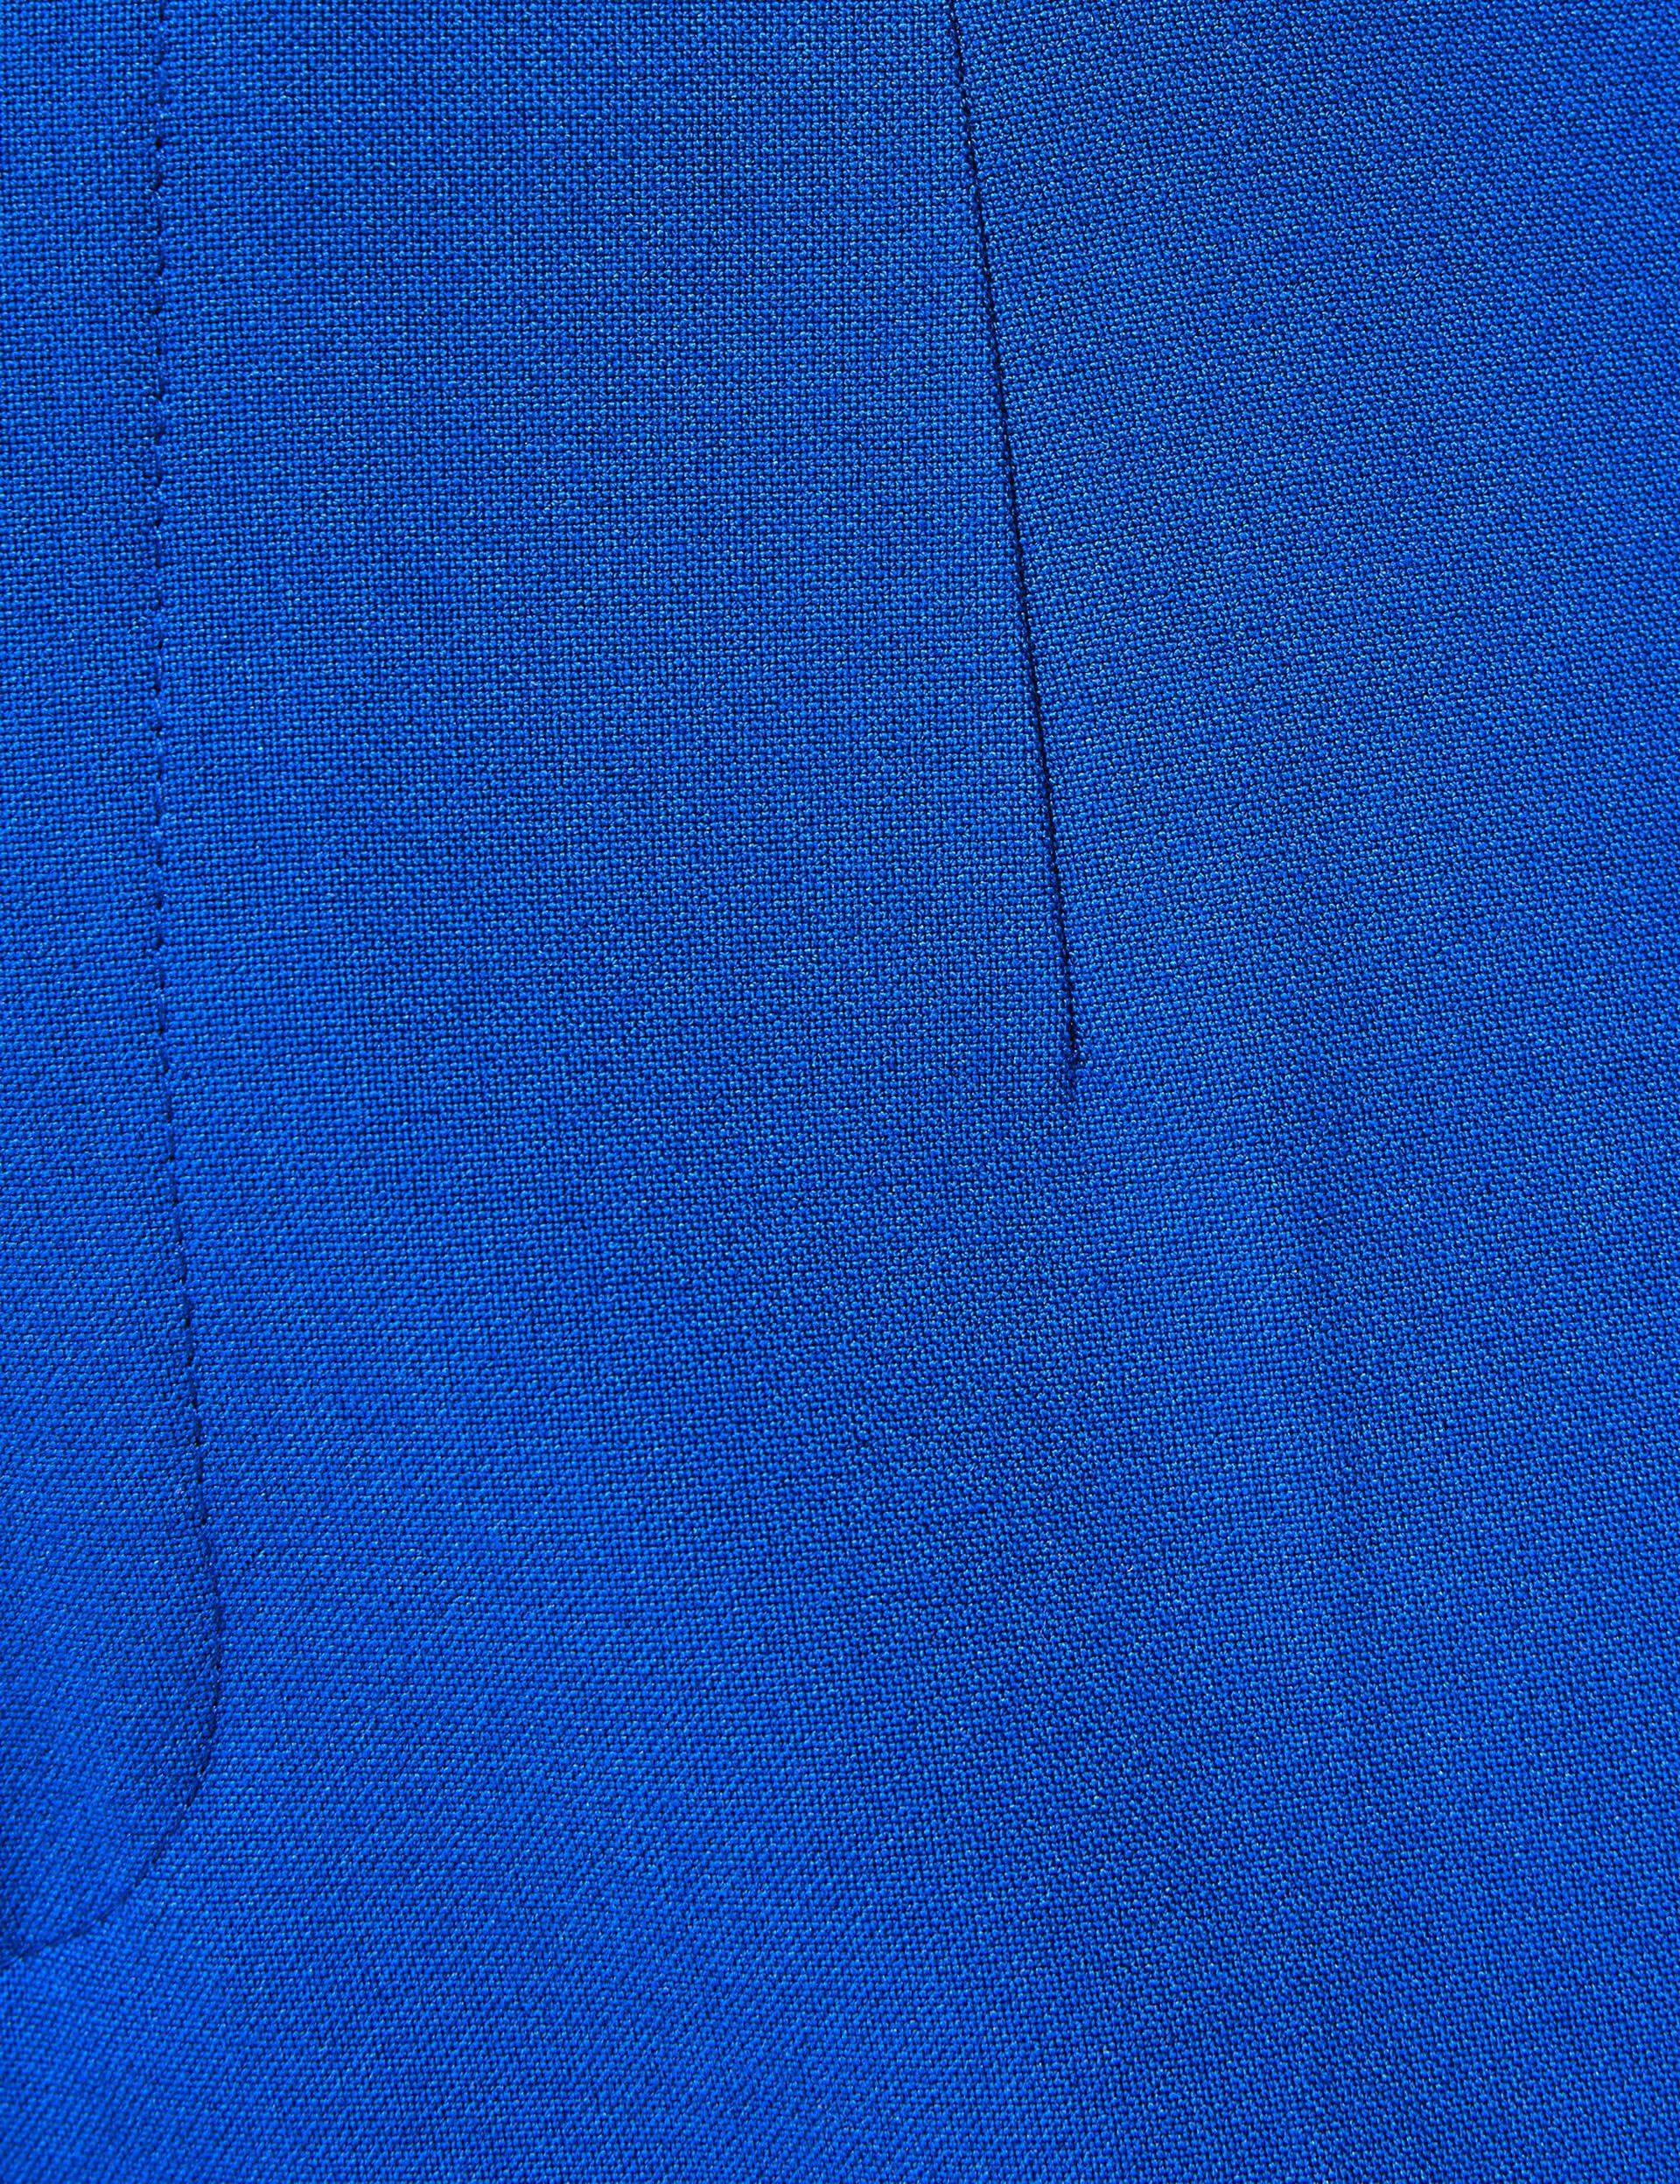 Pantalon tailleur bleu indigo